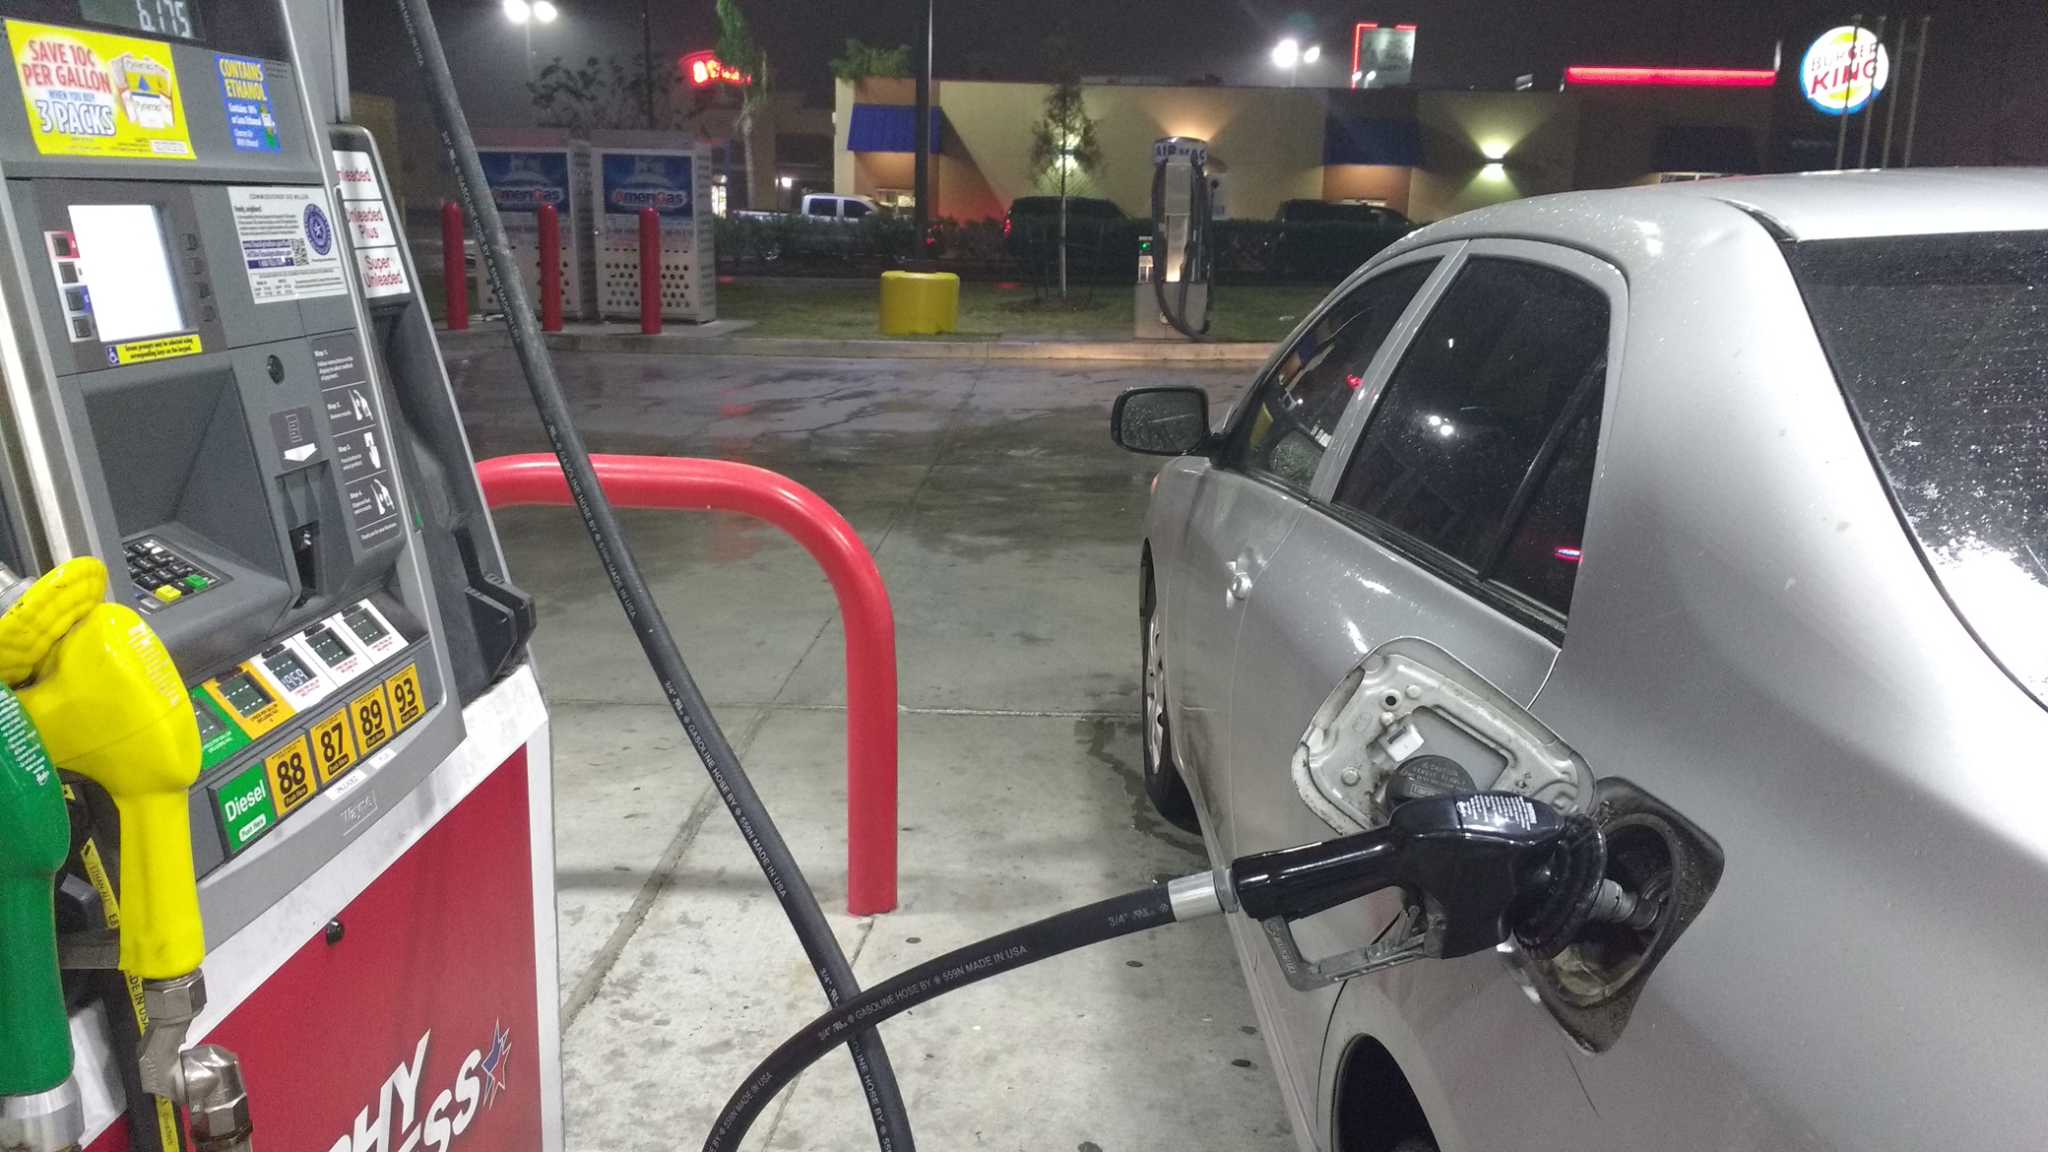 Preços da gasolina disparam na Flórida; custo do galão chega a $ 4,49 e preocupa